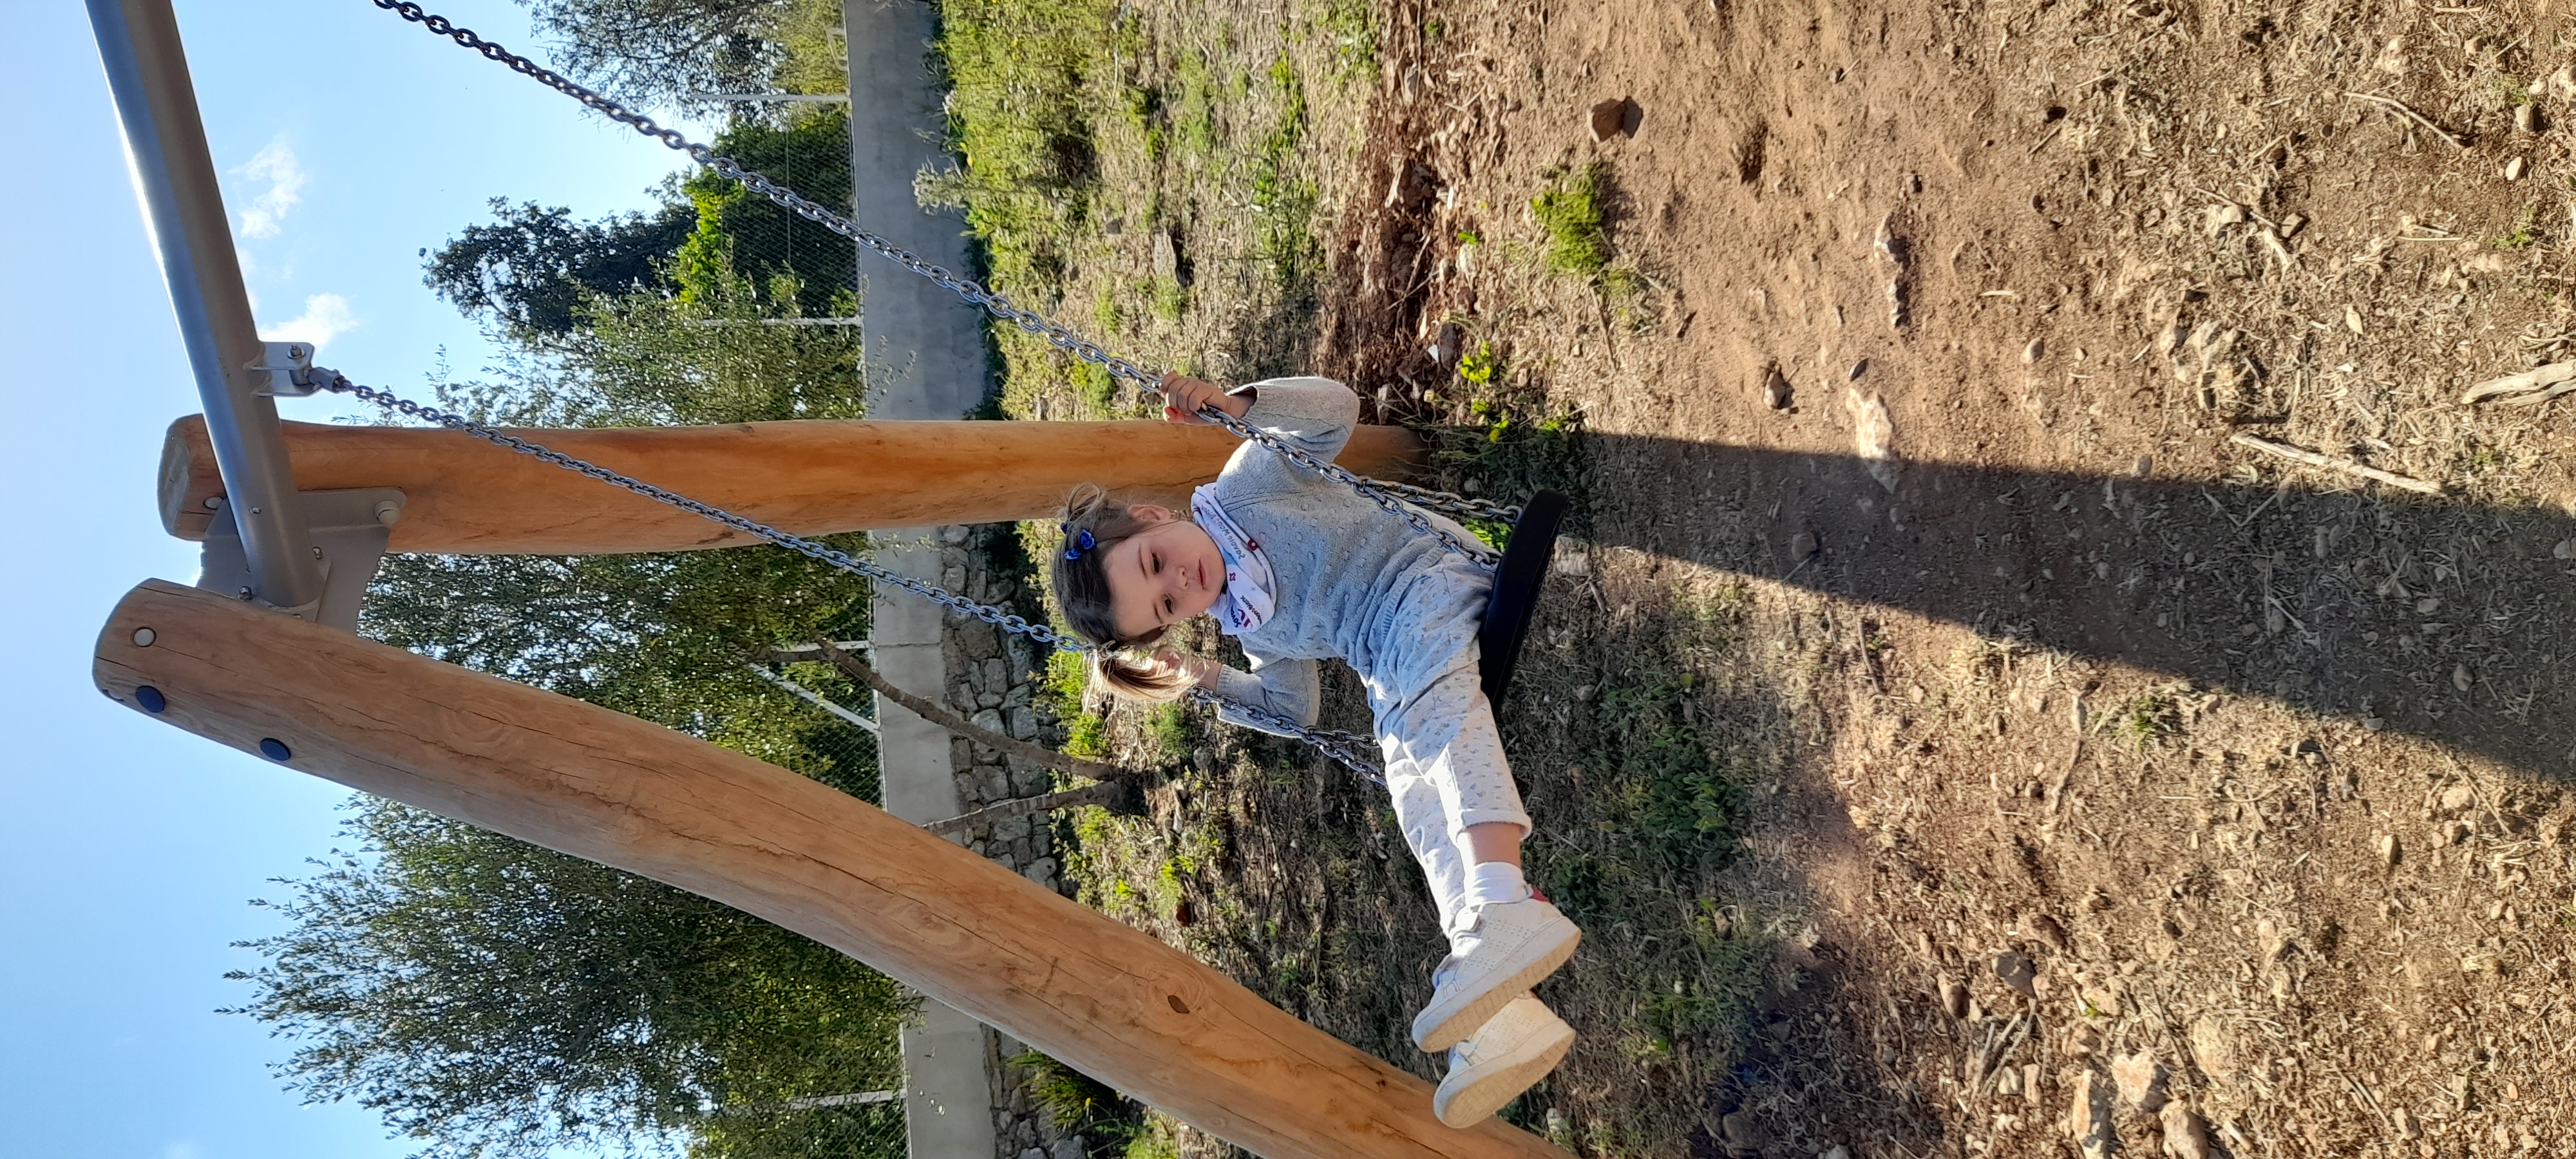 Aquest parc ens va encantar!